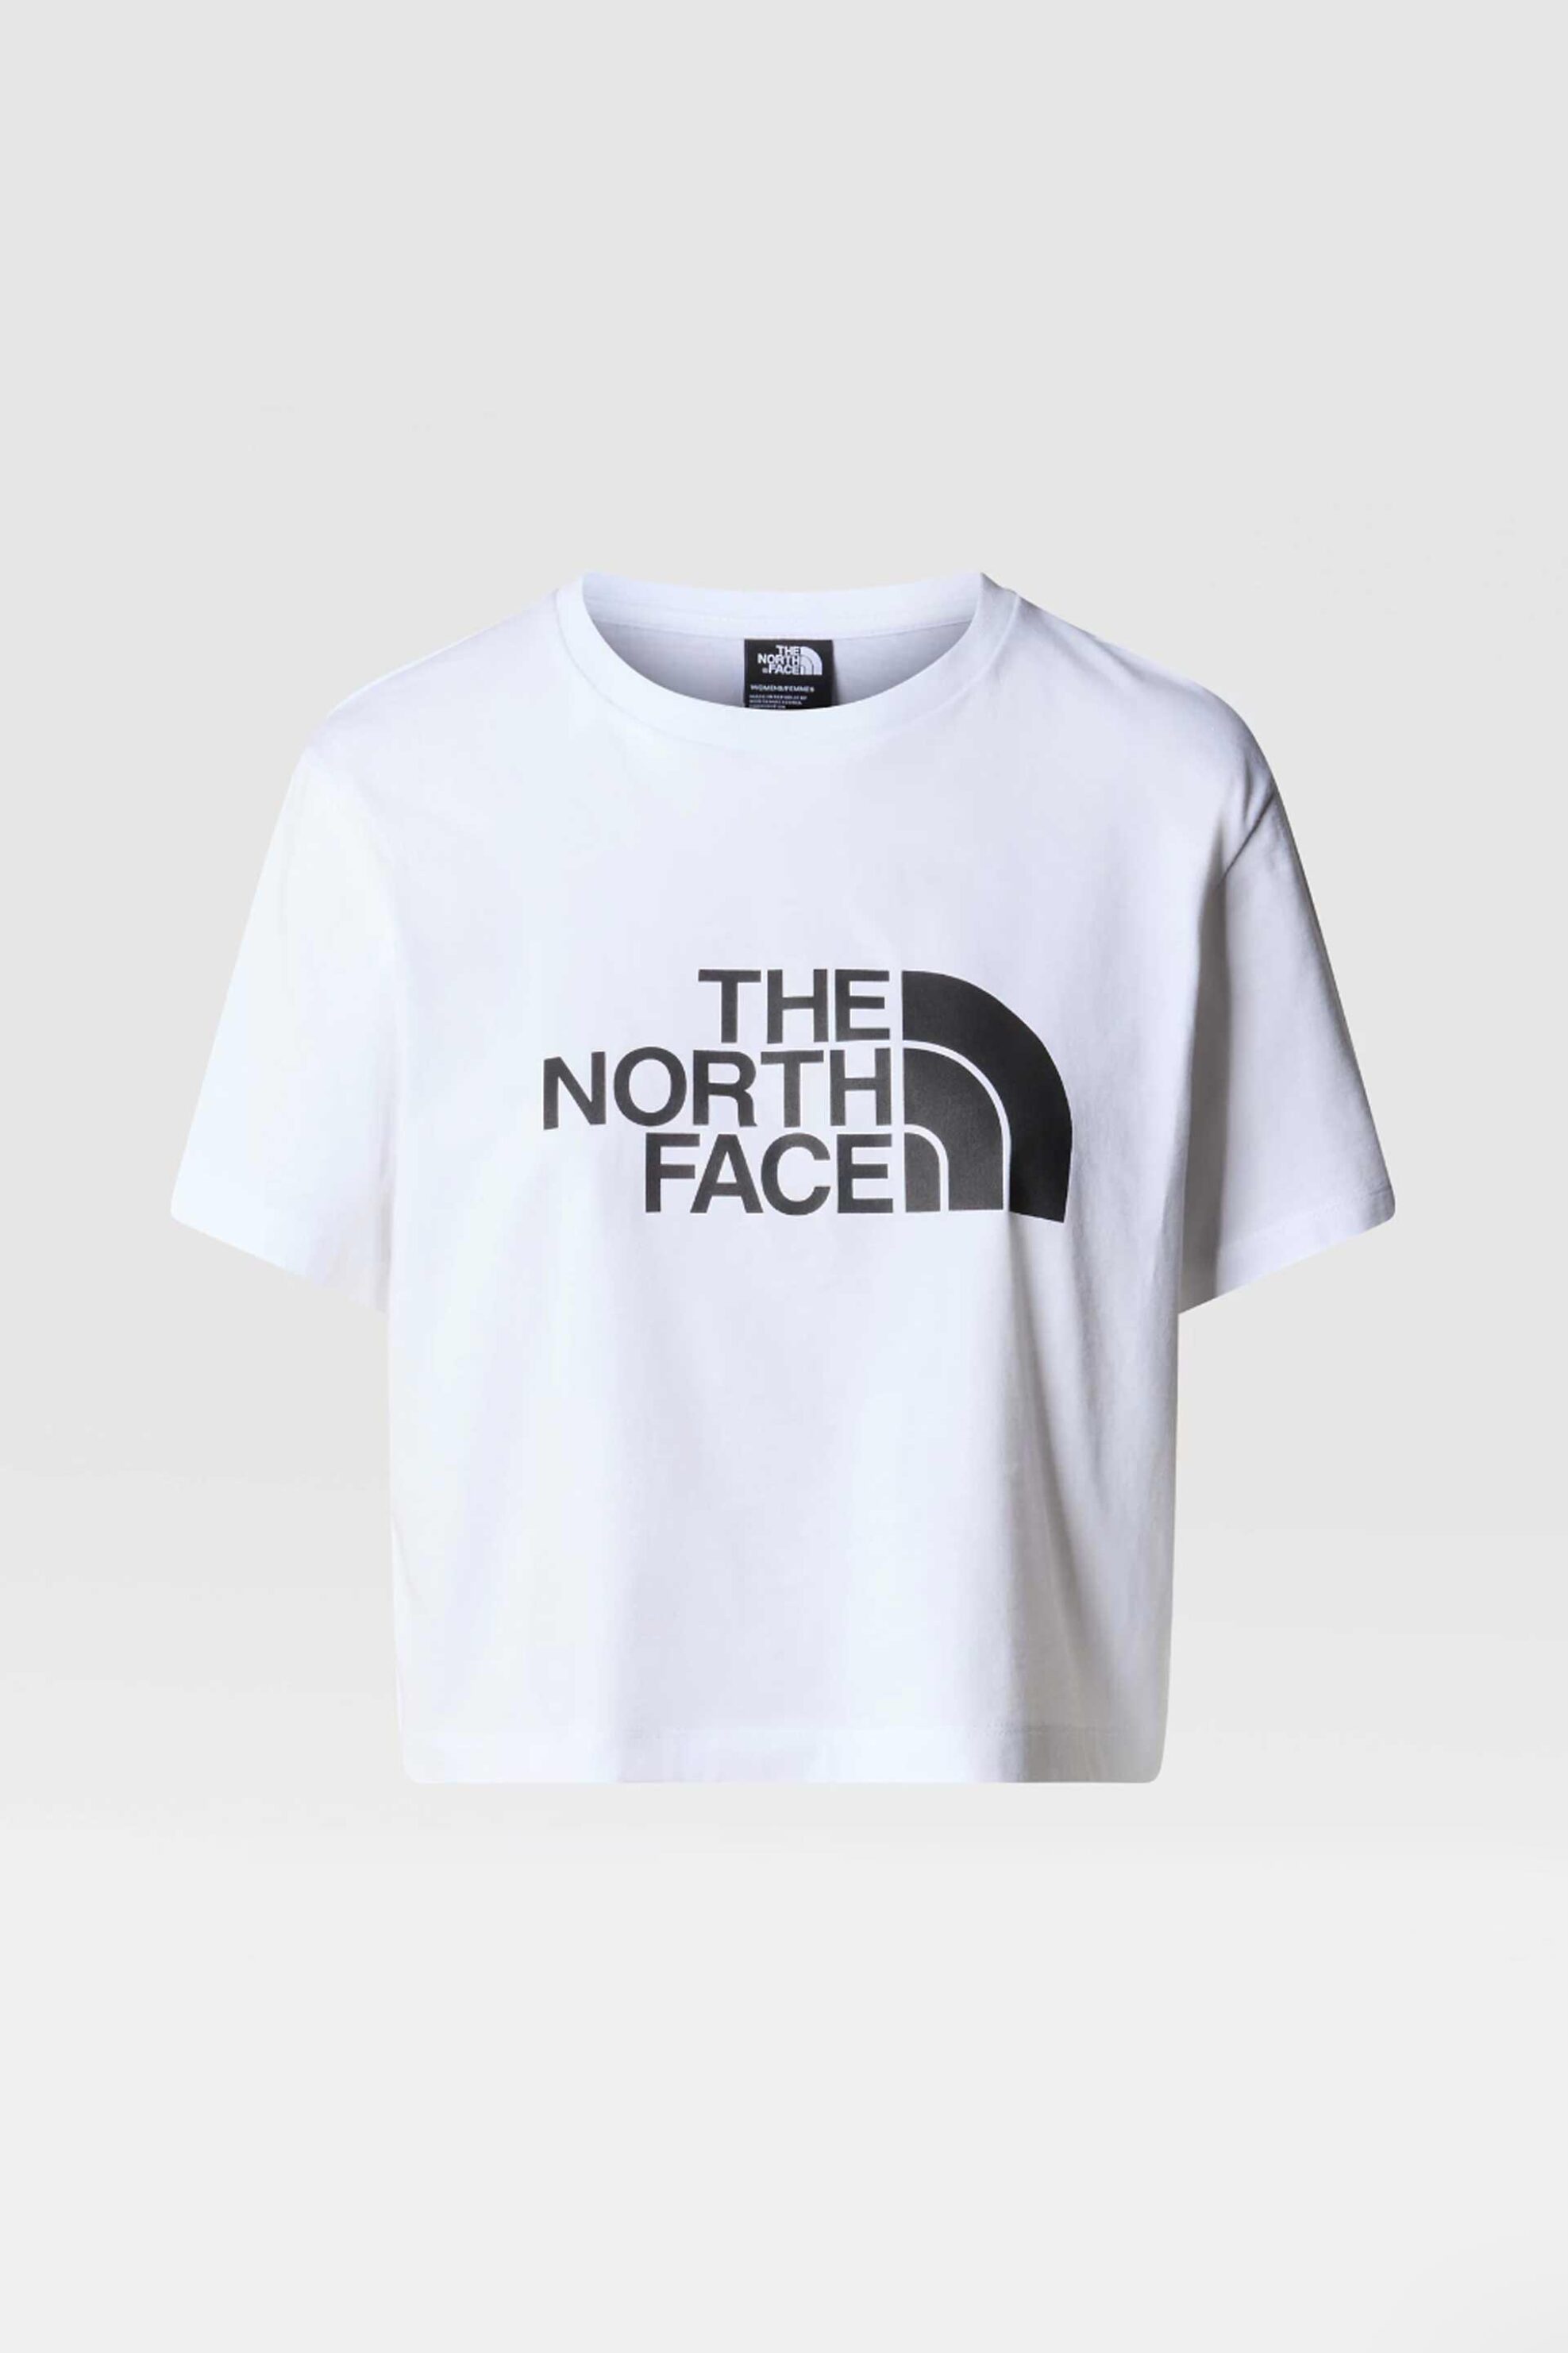 Γυναικεία Ρούχα & Αξεσουάρ > Γυναικεία Ρούχα > Γυναικεία Τοπ > Γυναικεία T-Shirts The North Face γυναικείο cropped T-shirt βαμβακερό μονόχρωμο με contrast logo prints "Easy" - NF0A87NAFN41 Λευκό